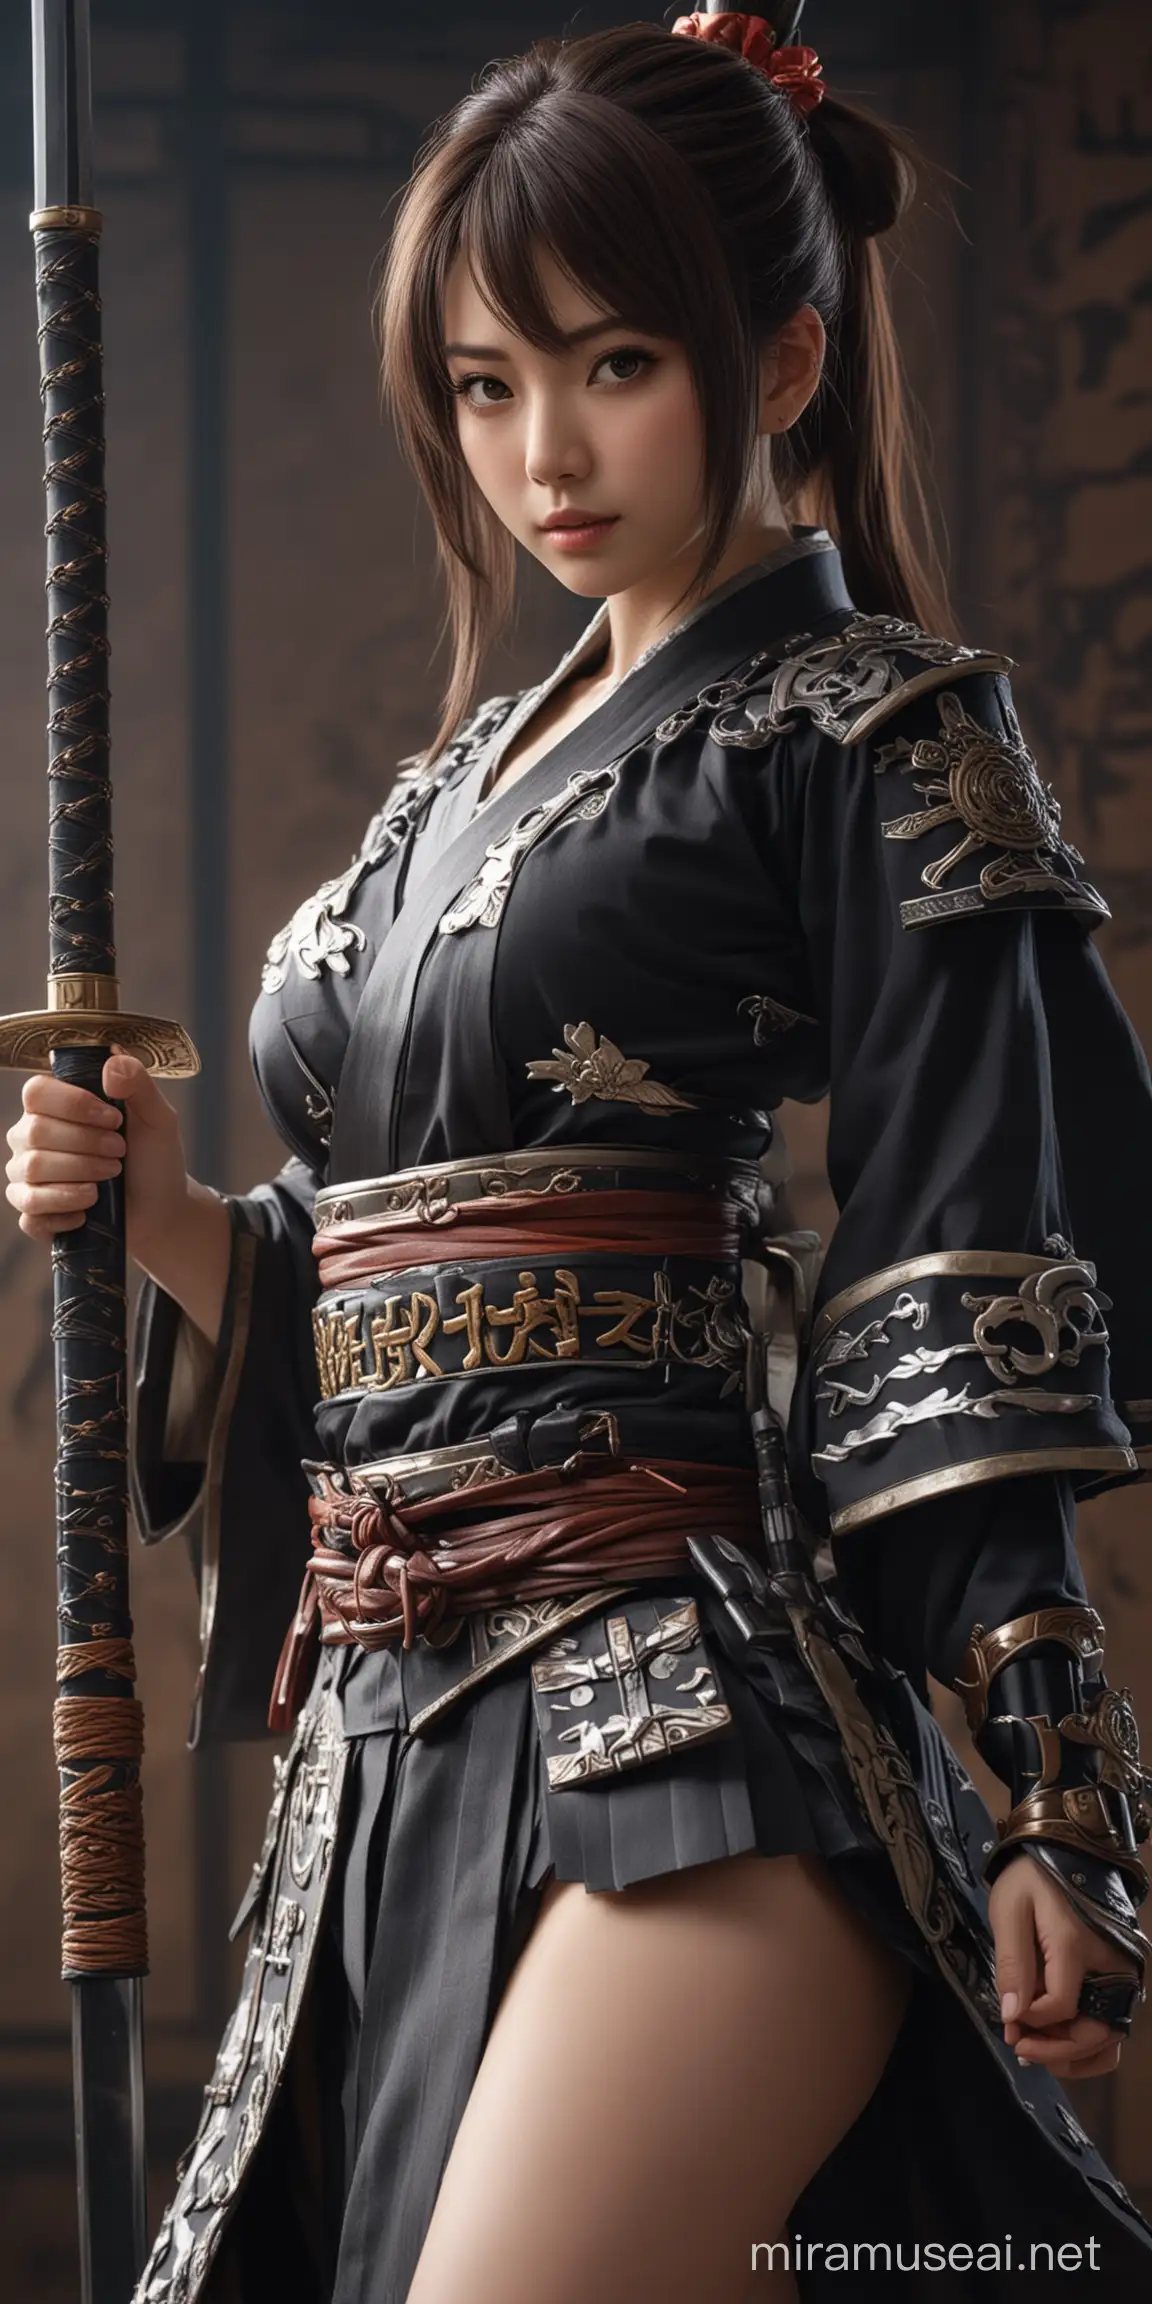 Beautiful Samurai Idol Girl in Fantasy Isekai Studio Portrait